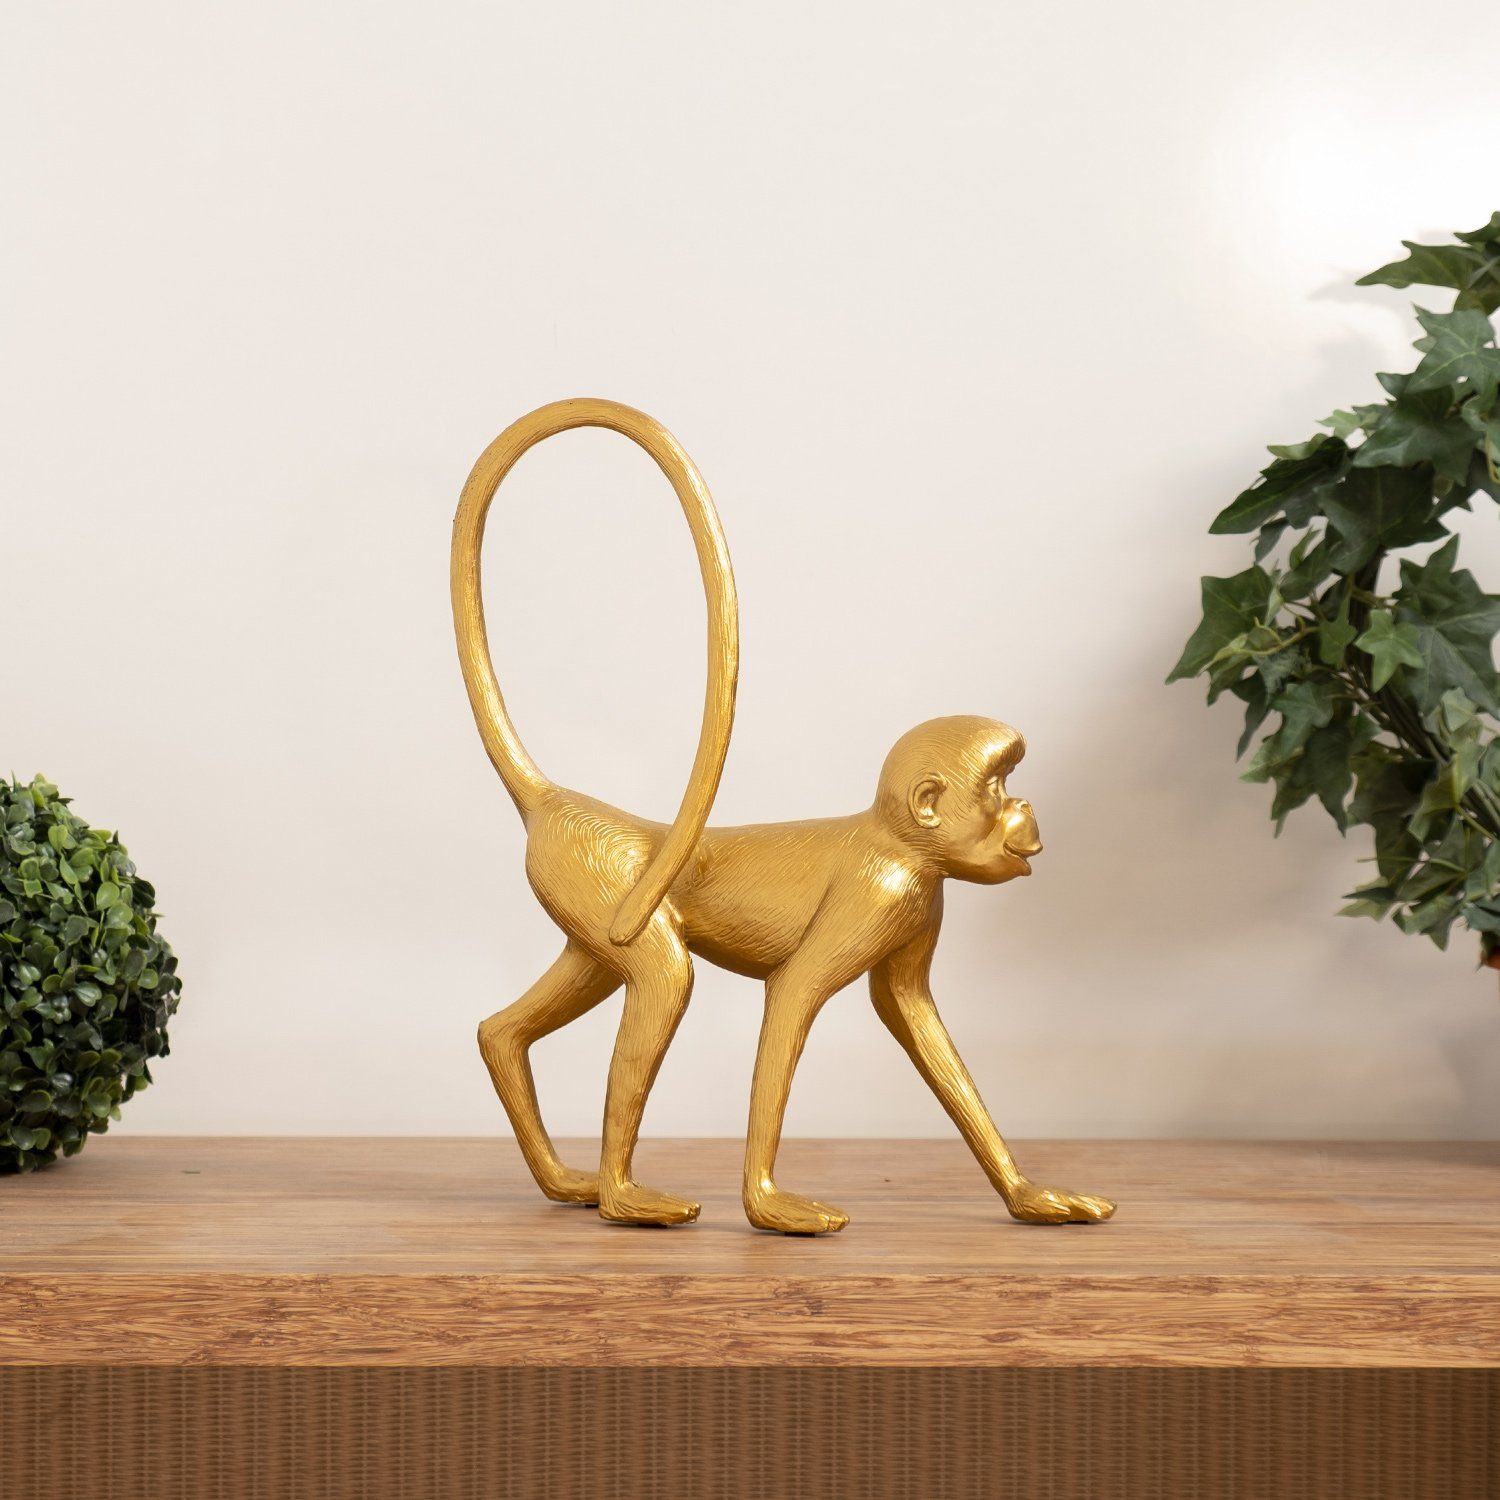 Moritz Dekofigur Deko-Figur Affe spaziert langer Schwanz aus Polyresin  gold, Dekofigur aus Polyresin Dekoelement Dekoration Figuren